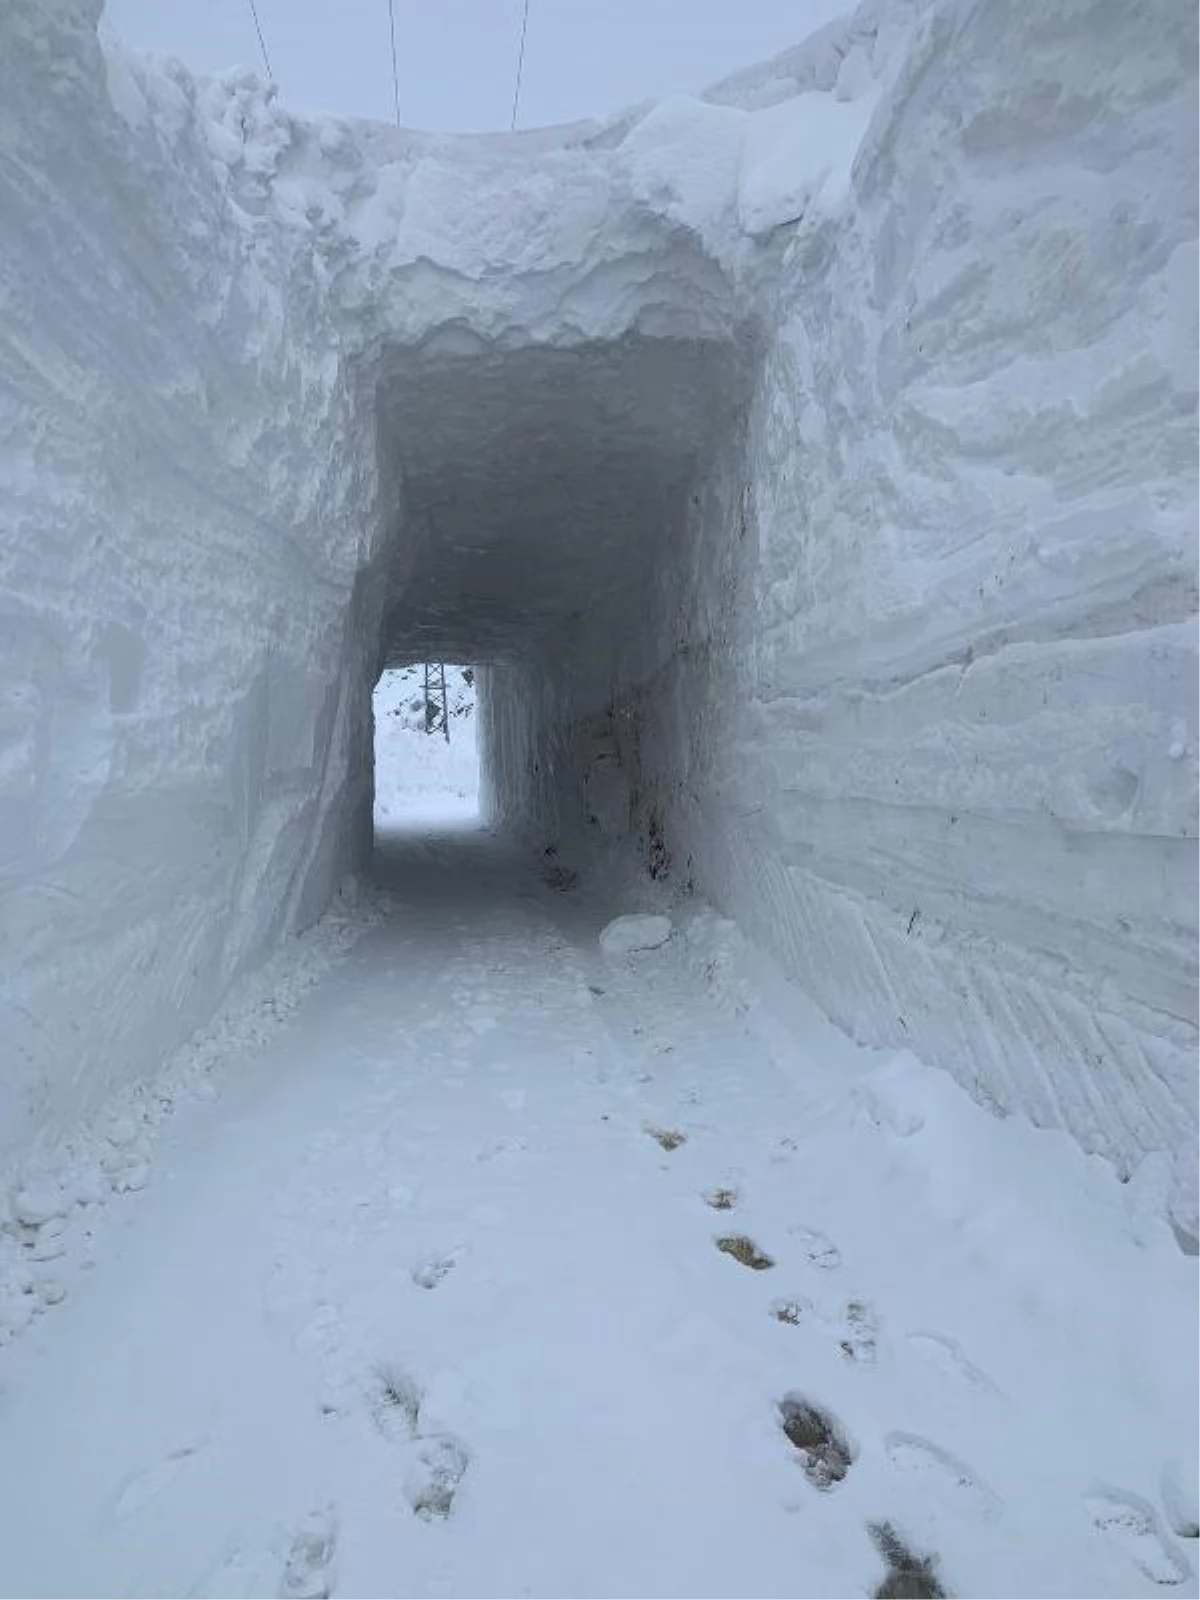 Görüntü Türkiye\'den! Kar kütlesinin içerisinden açılan tünelle ulaşım sağlandı